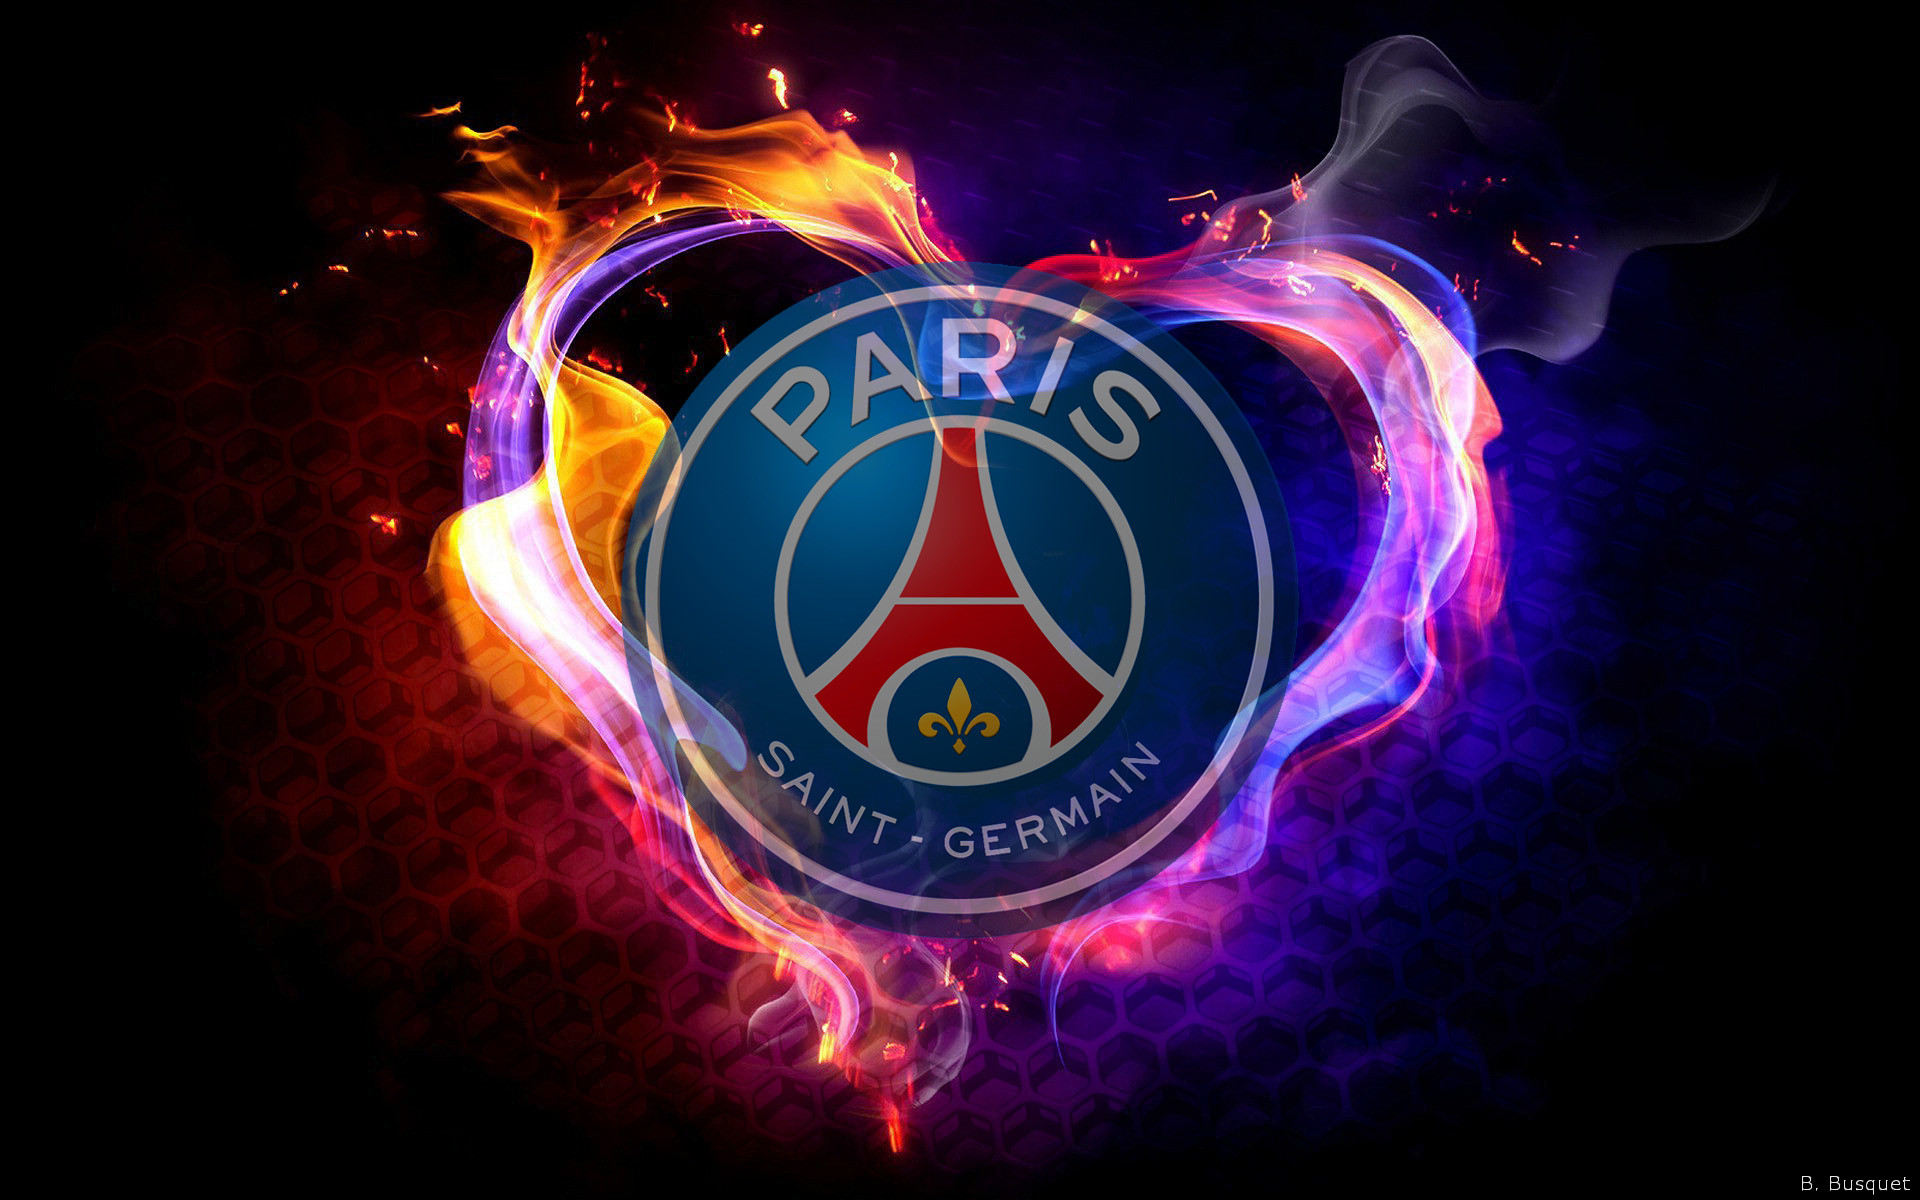 paris saint germain f c, sports, emblem, logo, soccer